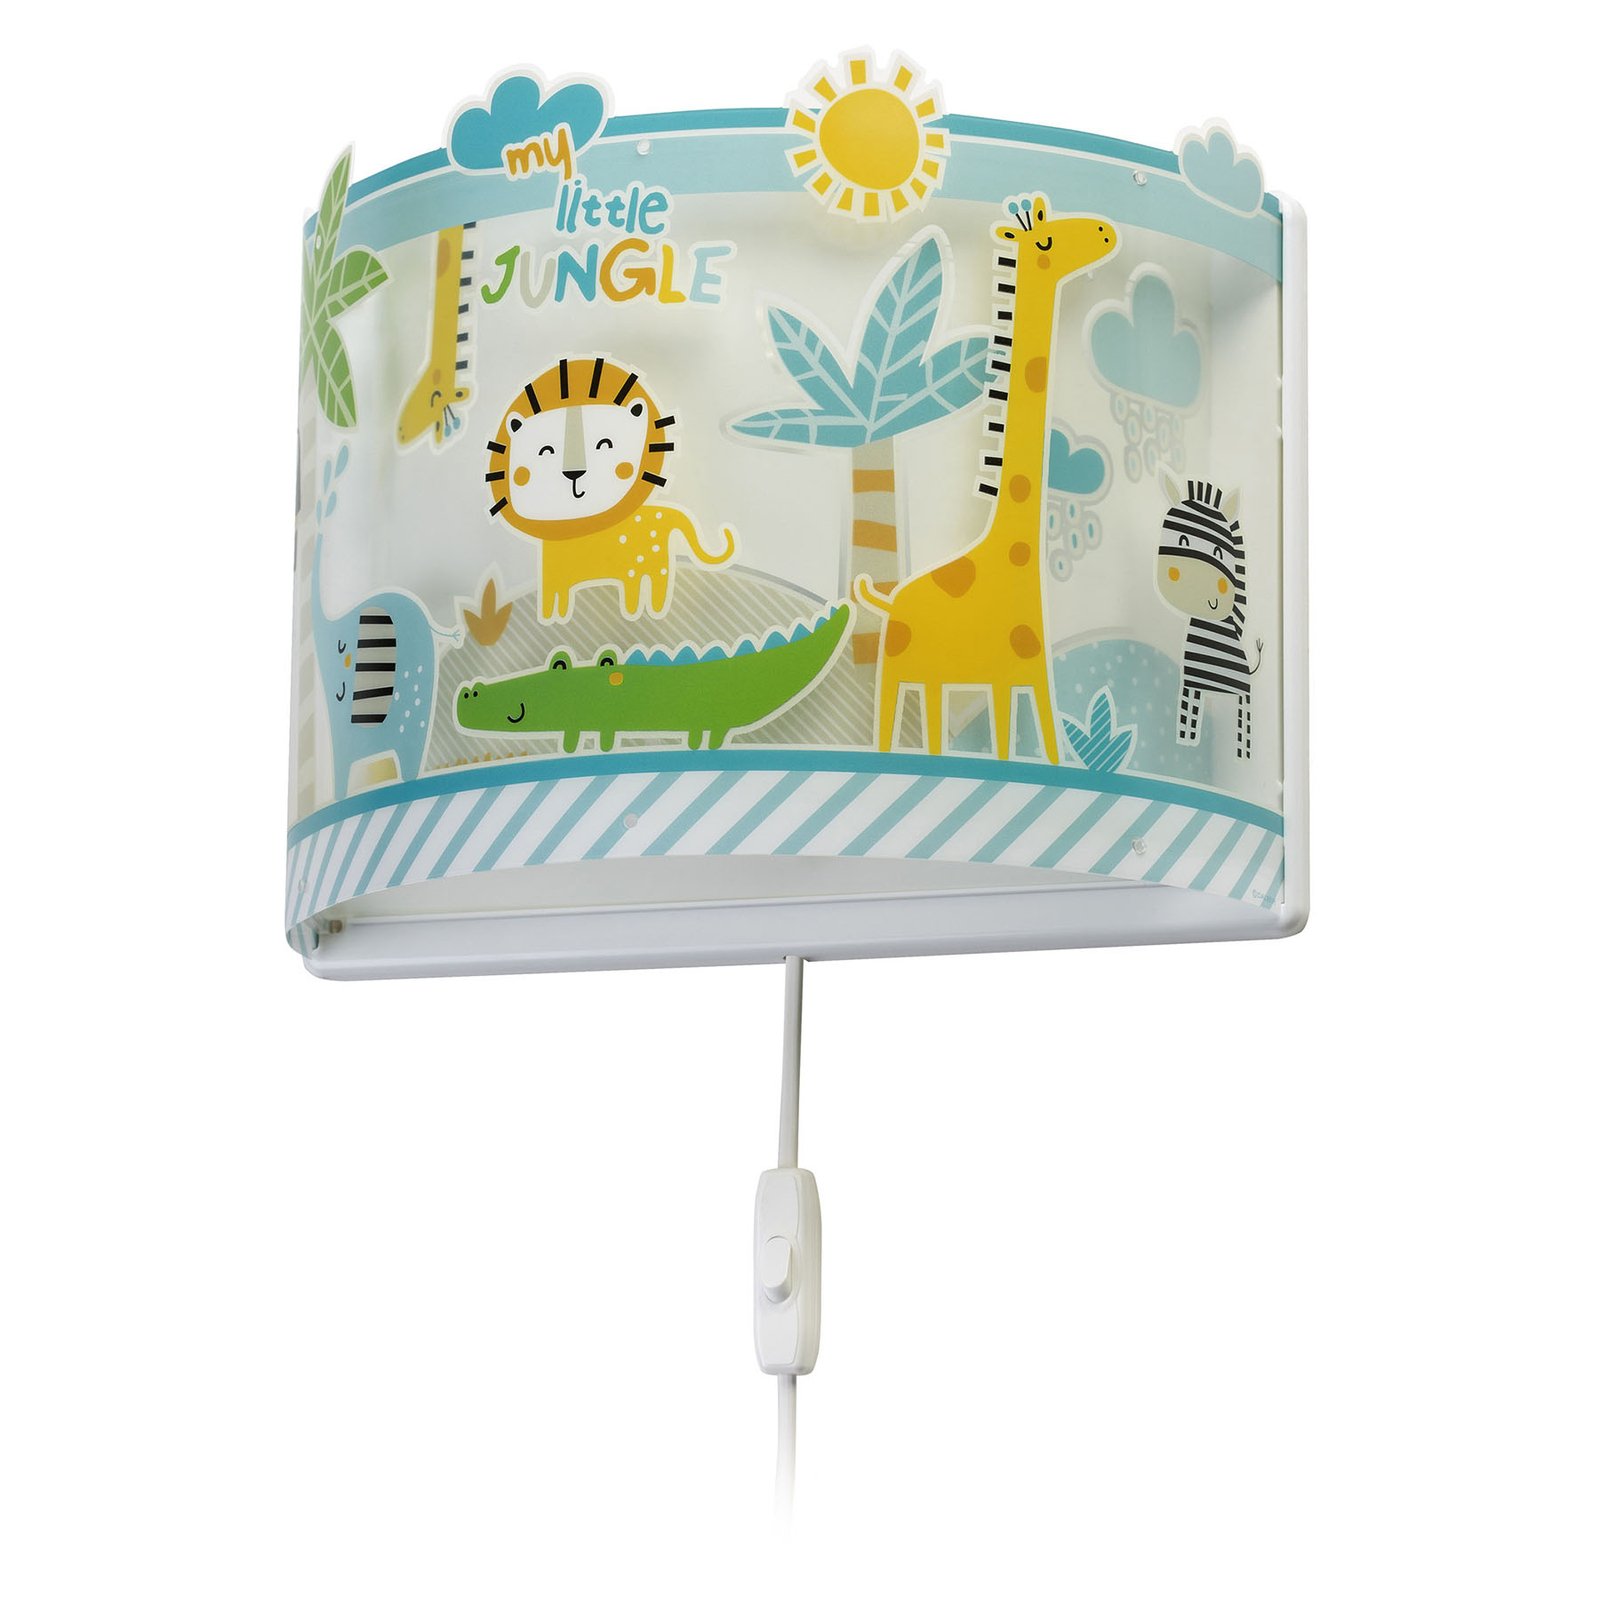 Little Jungle wandlamp voor kinderen met stekker